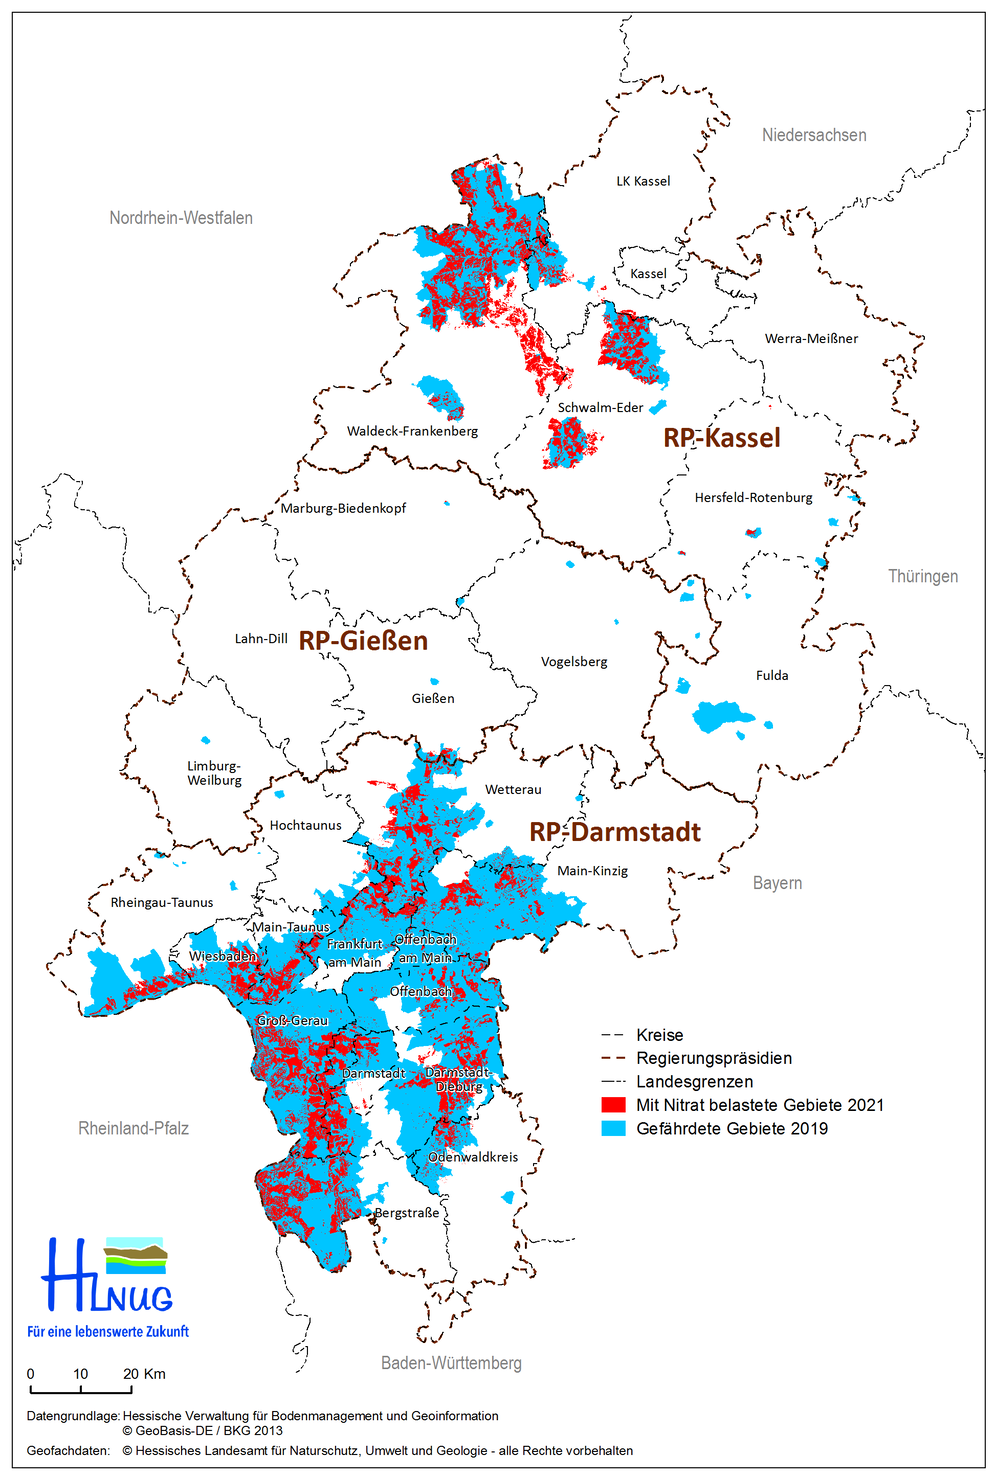 Karte der mit Nitrat belasteten Gebiete in Hessen als rote Teilflächen. Die belasteten Gebiete von 2019 sind dahinter als blaue Teilflächen zu sehen.